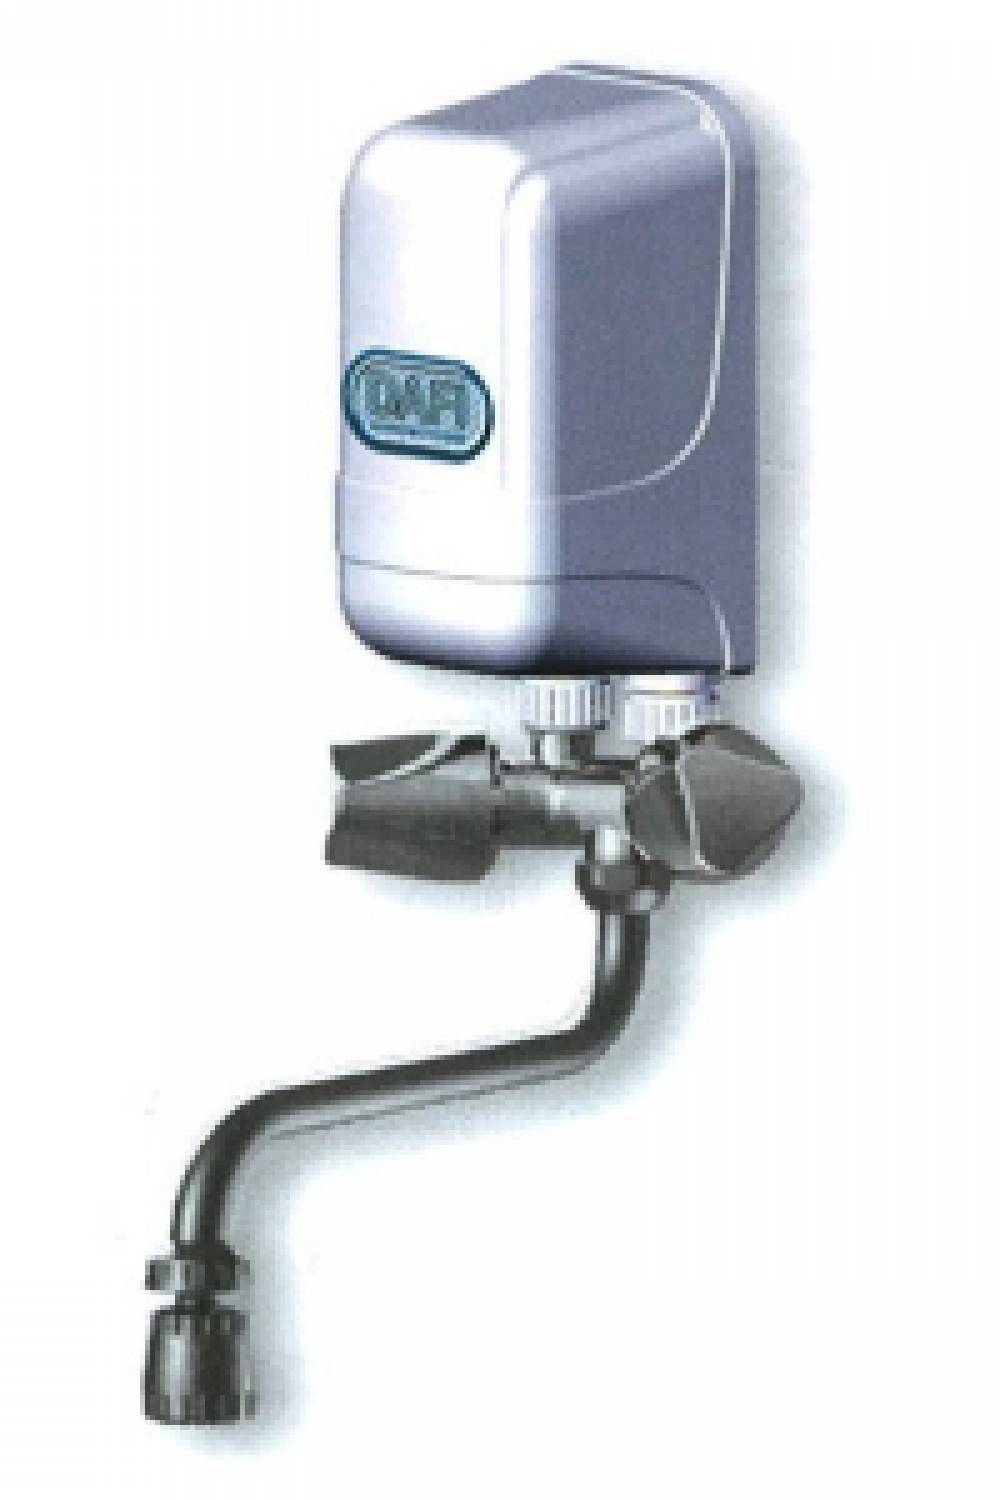 Water heater (TMC) kst. metaal kraan 18 cm. 230V 4500 Watt.